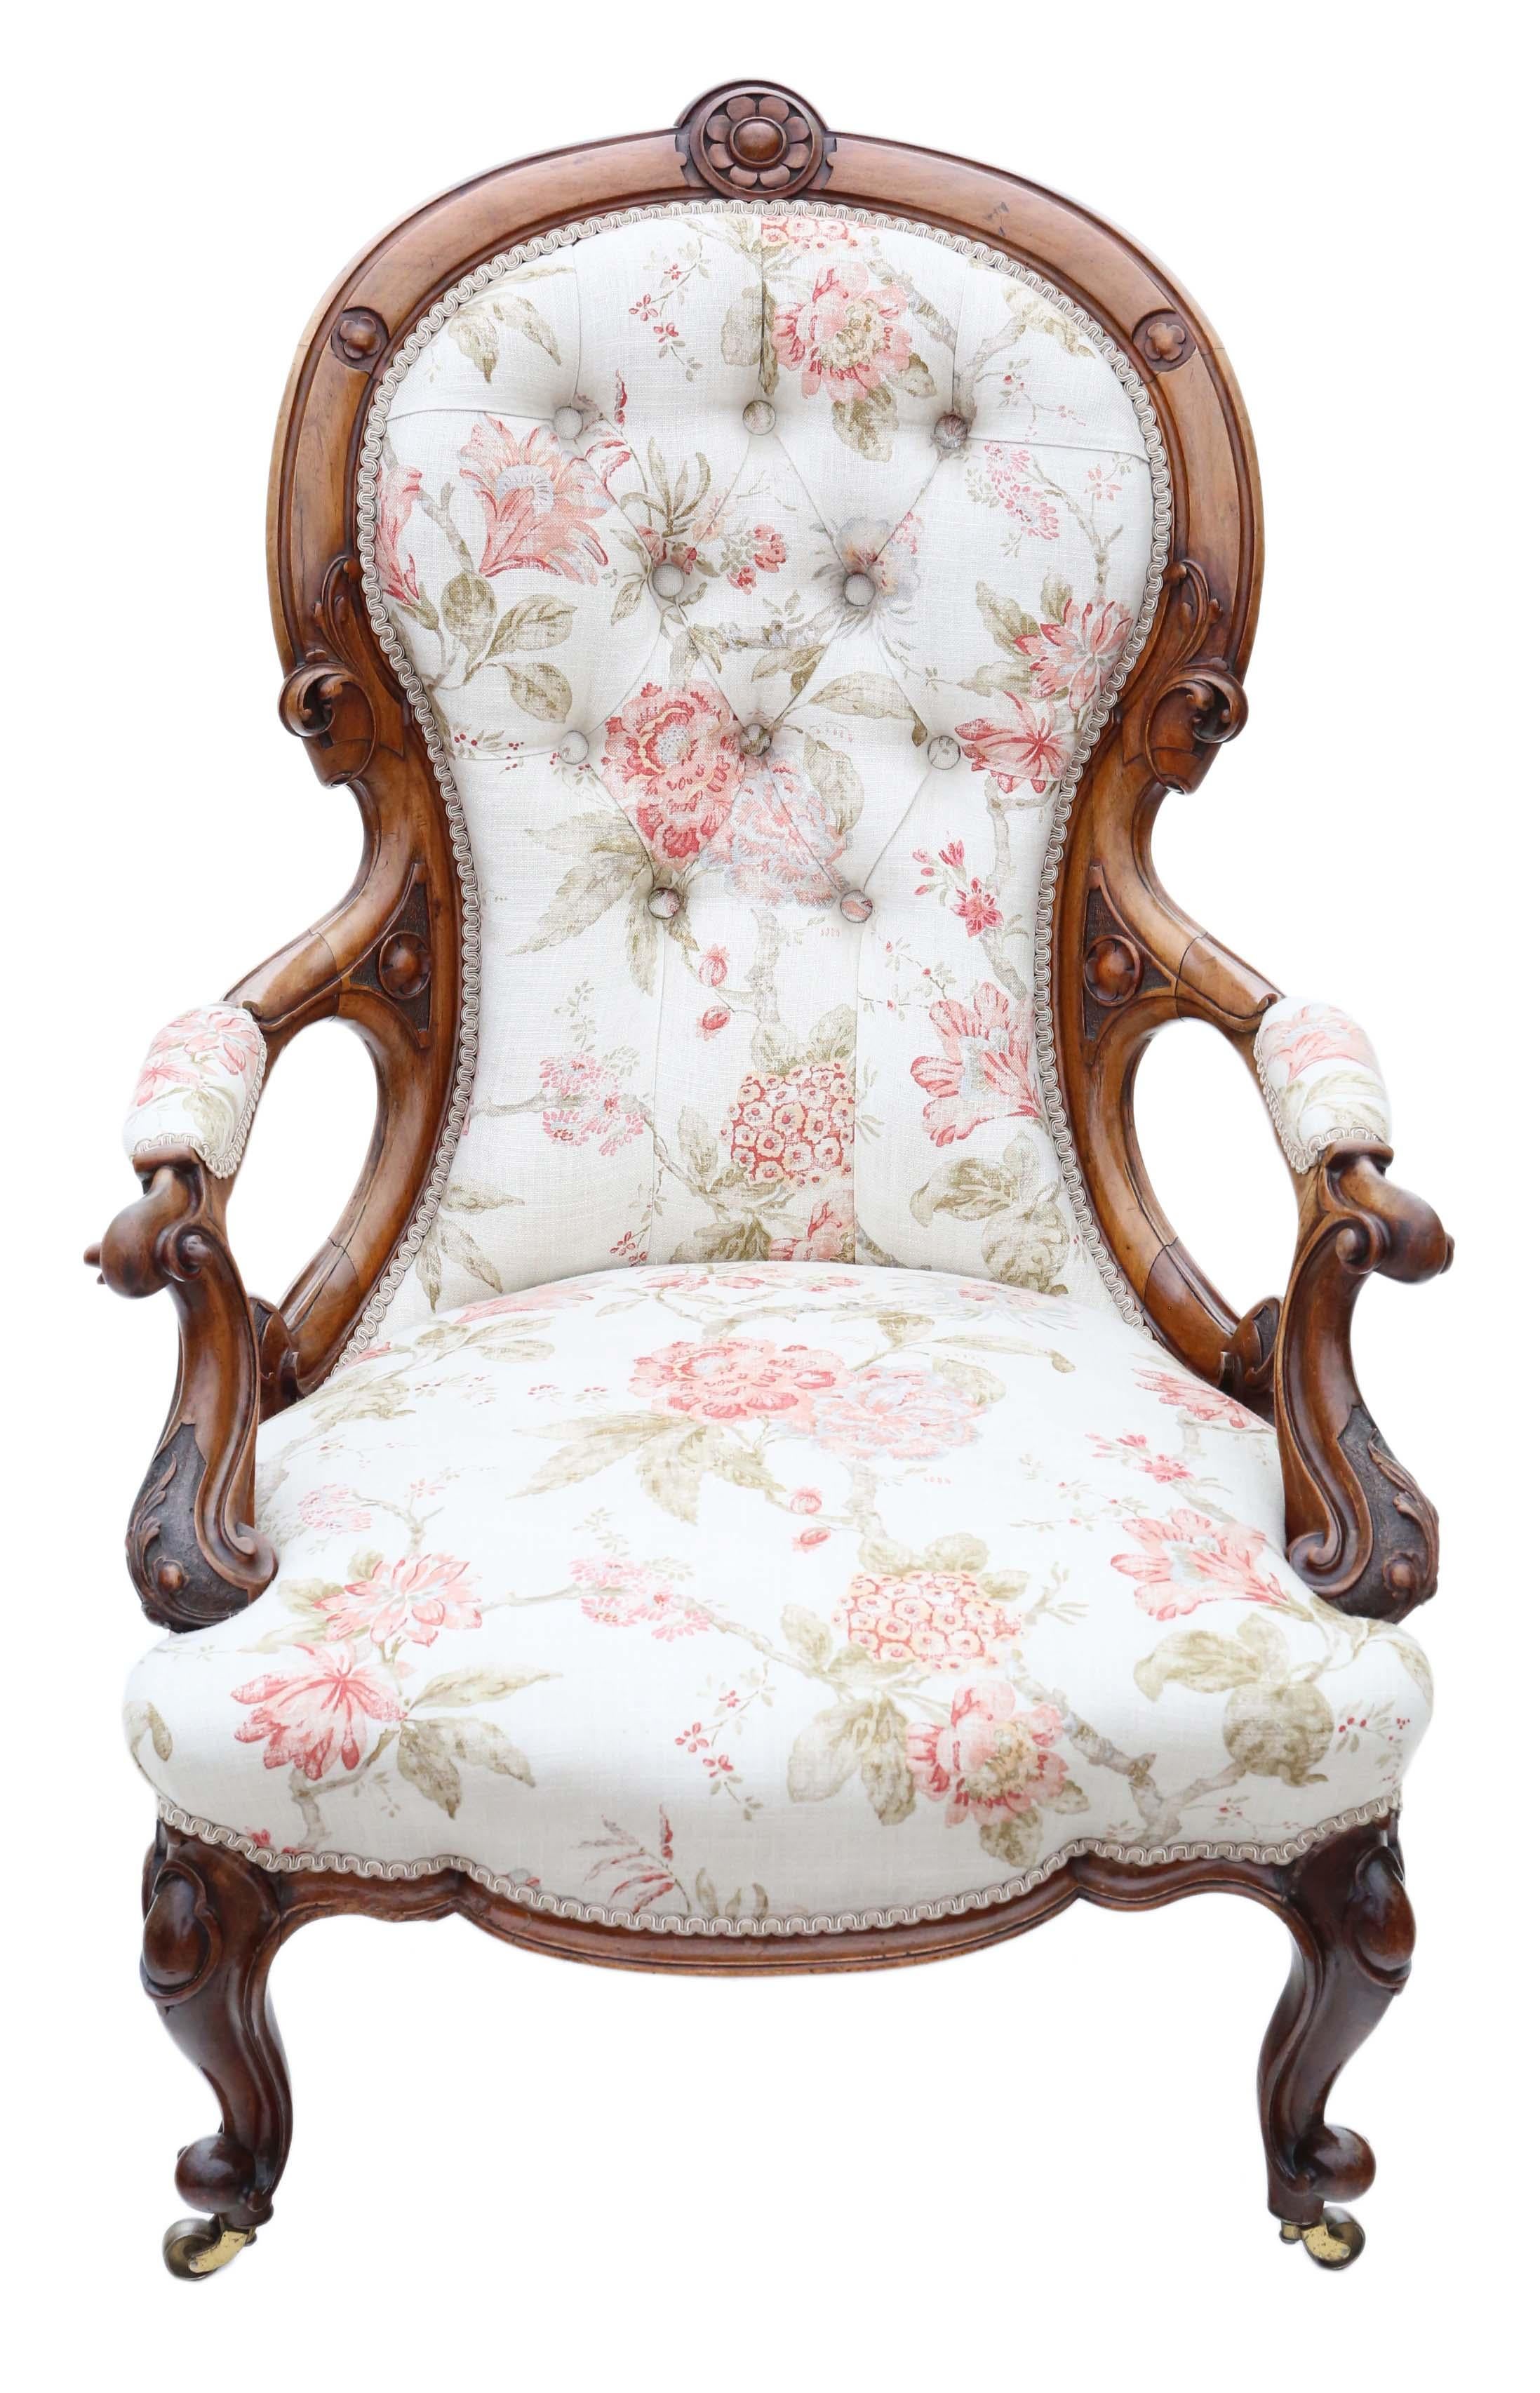 Antike Qualität viktorianischen C1880 Nussbaum Slipper Löffel zurück Sessel.

Solide, keine losen Verbindungen. Voller Alter, Charakter und Charme. Ein sehr dekorativer Stuhl. Die Polsterung ist neu, ohne Abnutzung oder Flecken. Attraktive